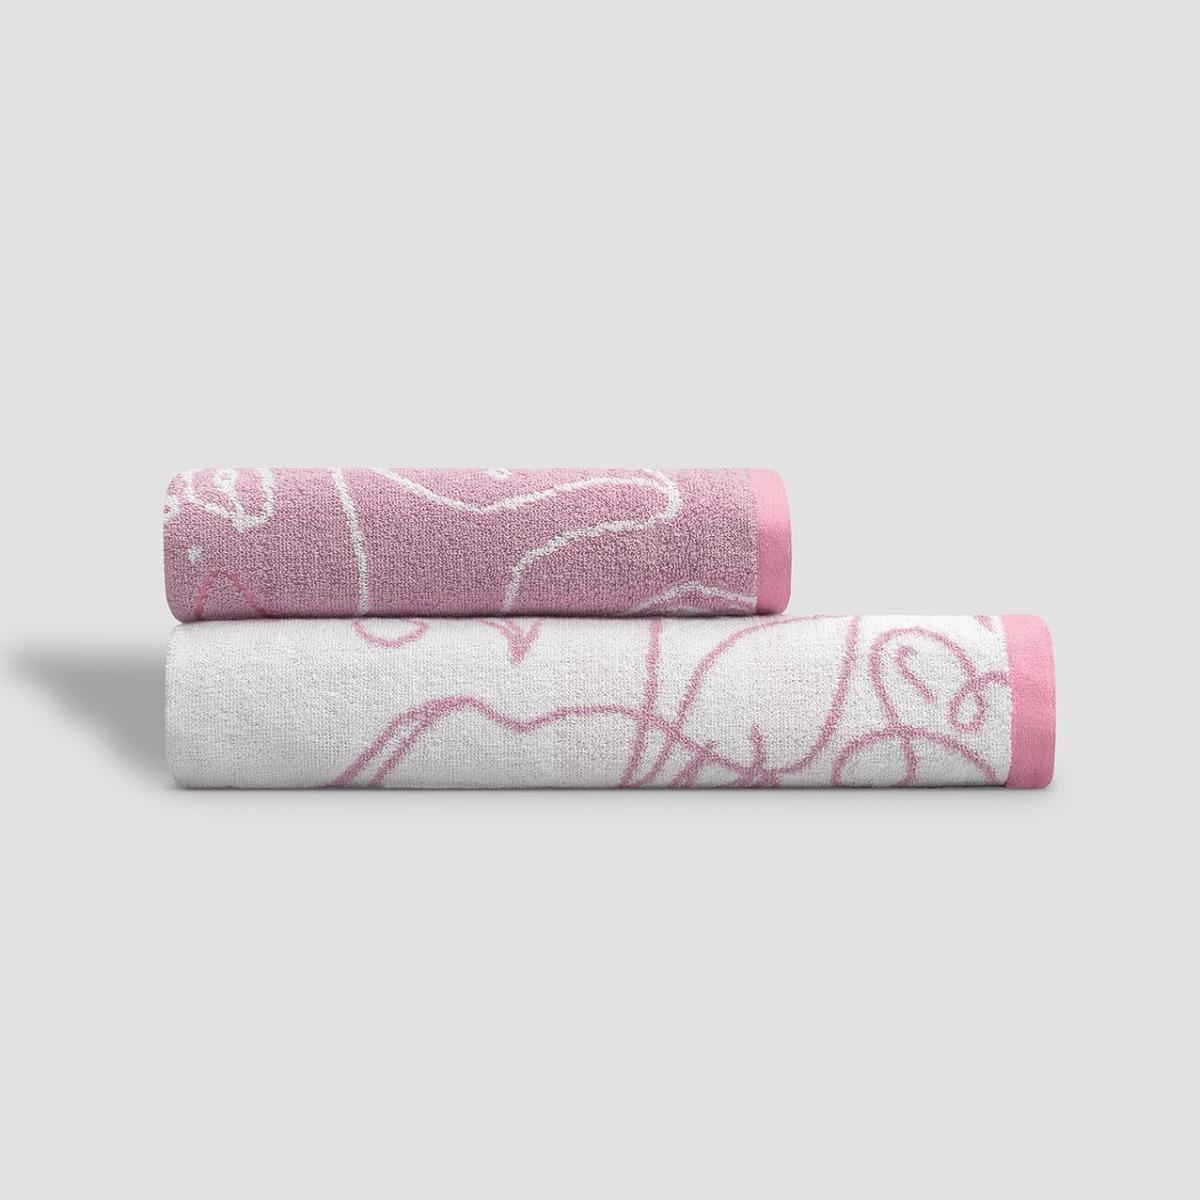 Полотенце Kids by Togas Кэрри белое с розовым 50х100 см белое полотенце спанлейс эконом 45 90 см